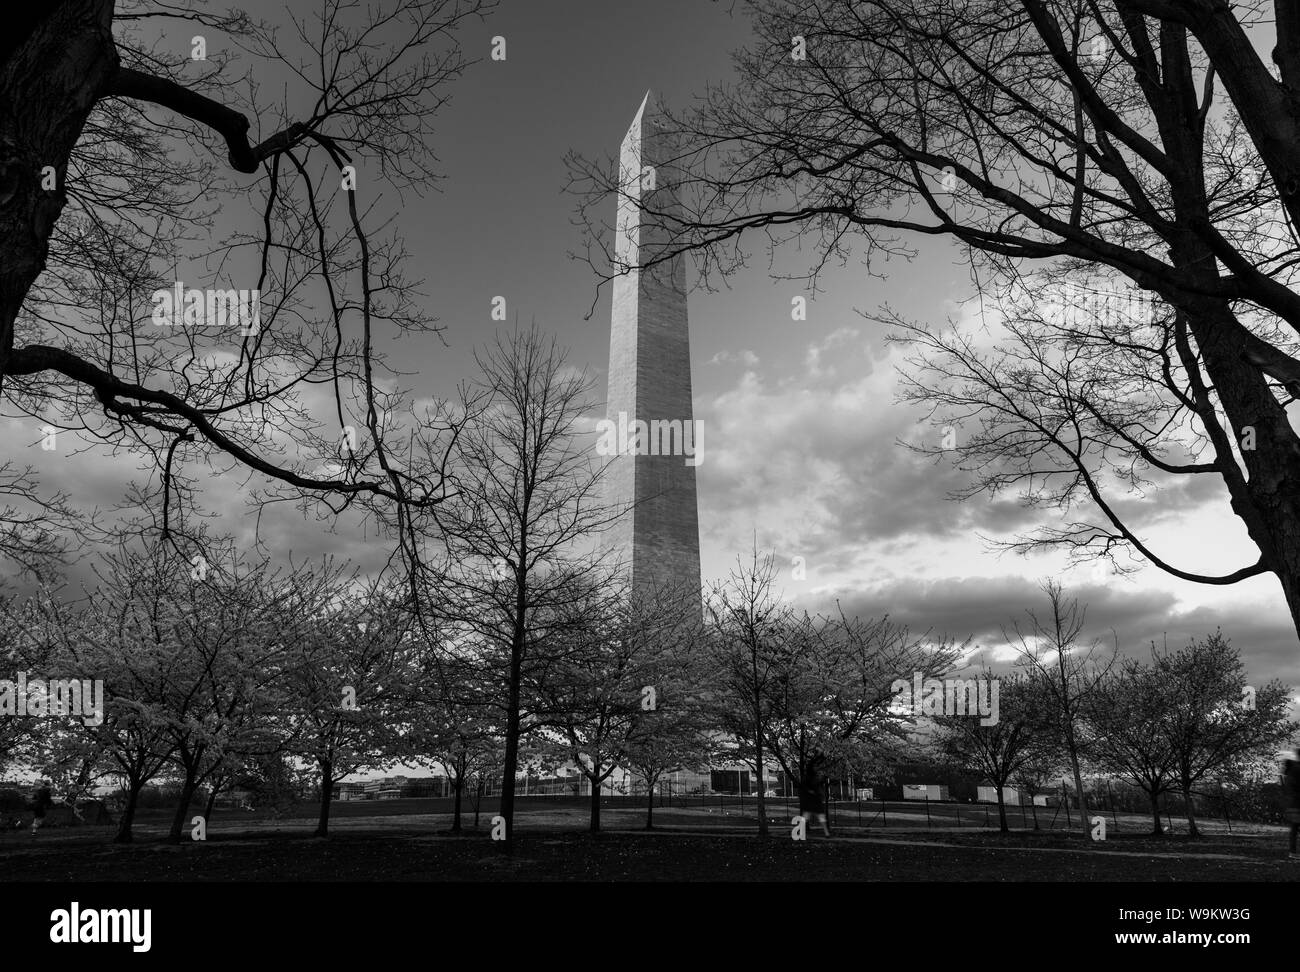 Ein schwarz-weißes Bild des Washington Monument als durch einige Kirschbäume in der Nähe gesehen. Stockfoto